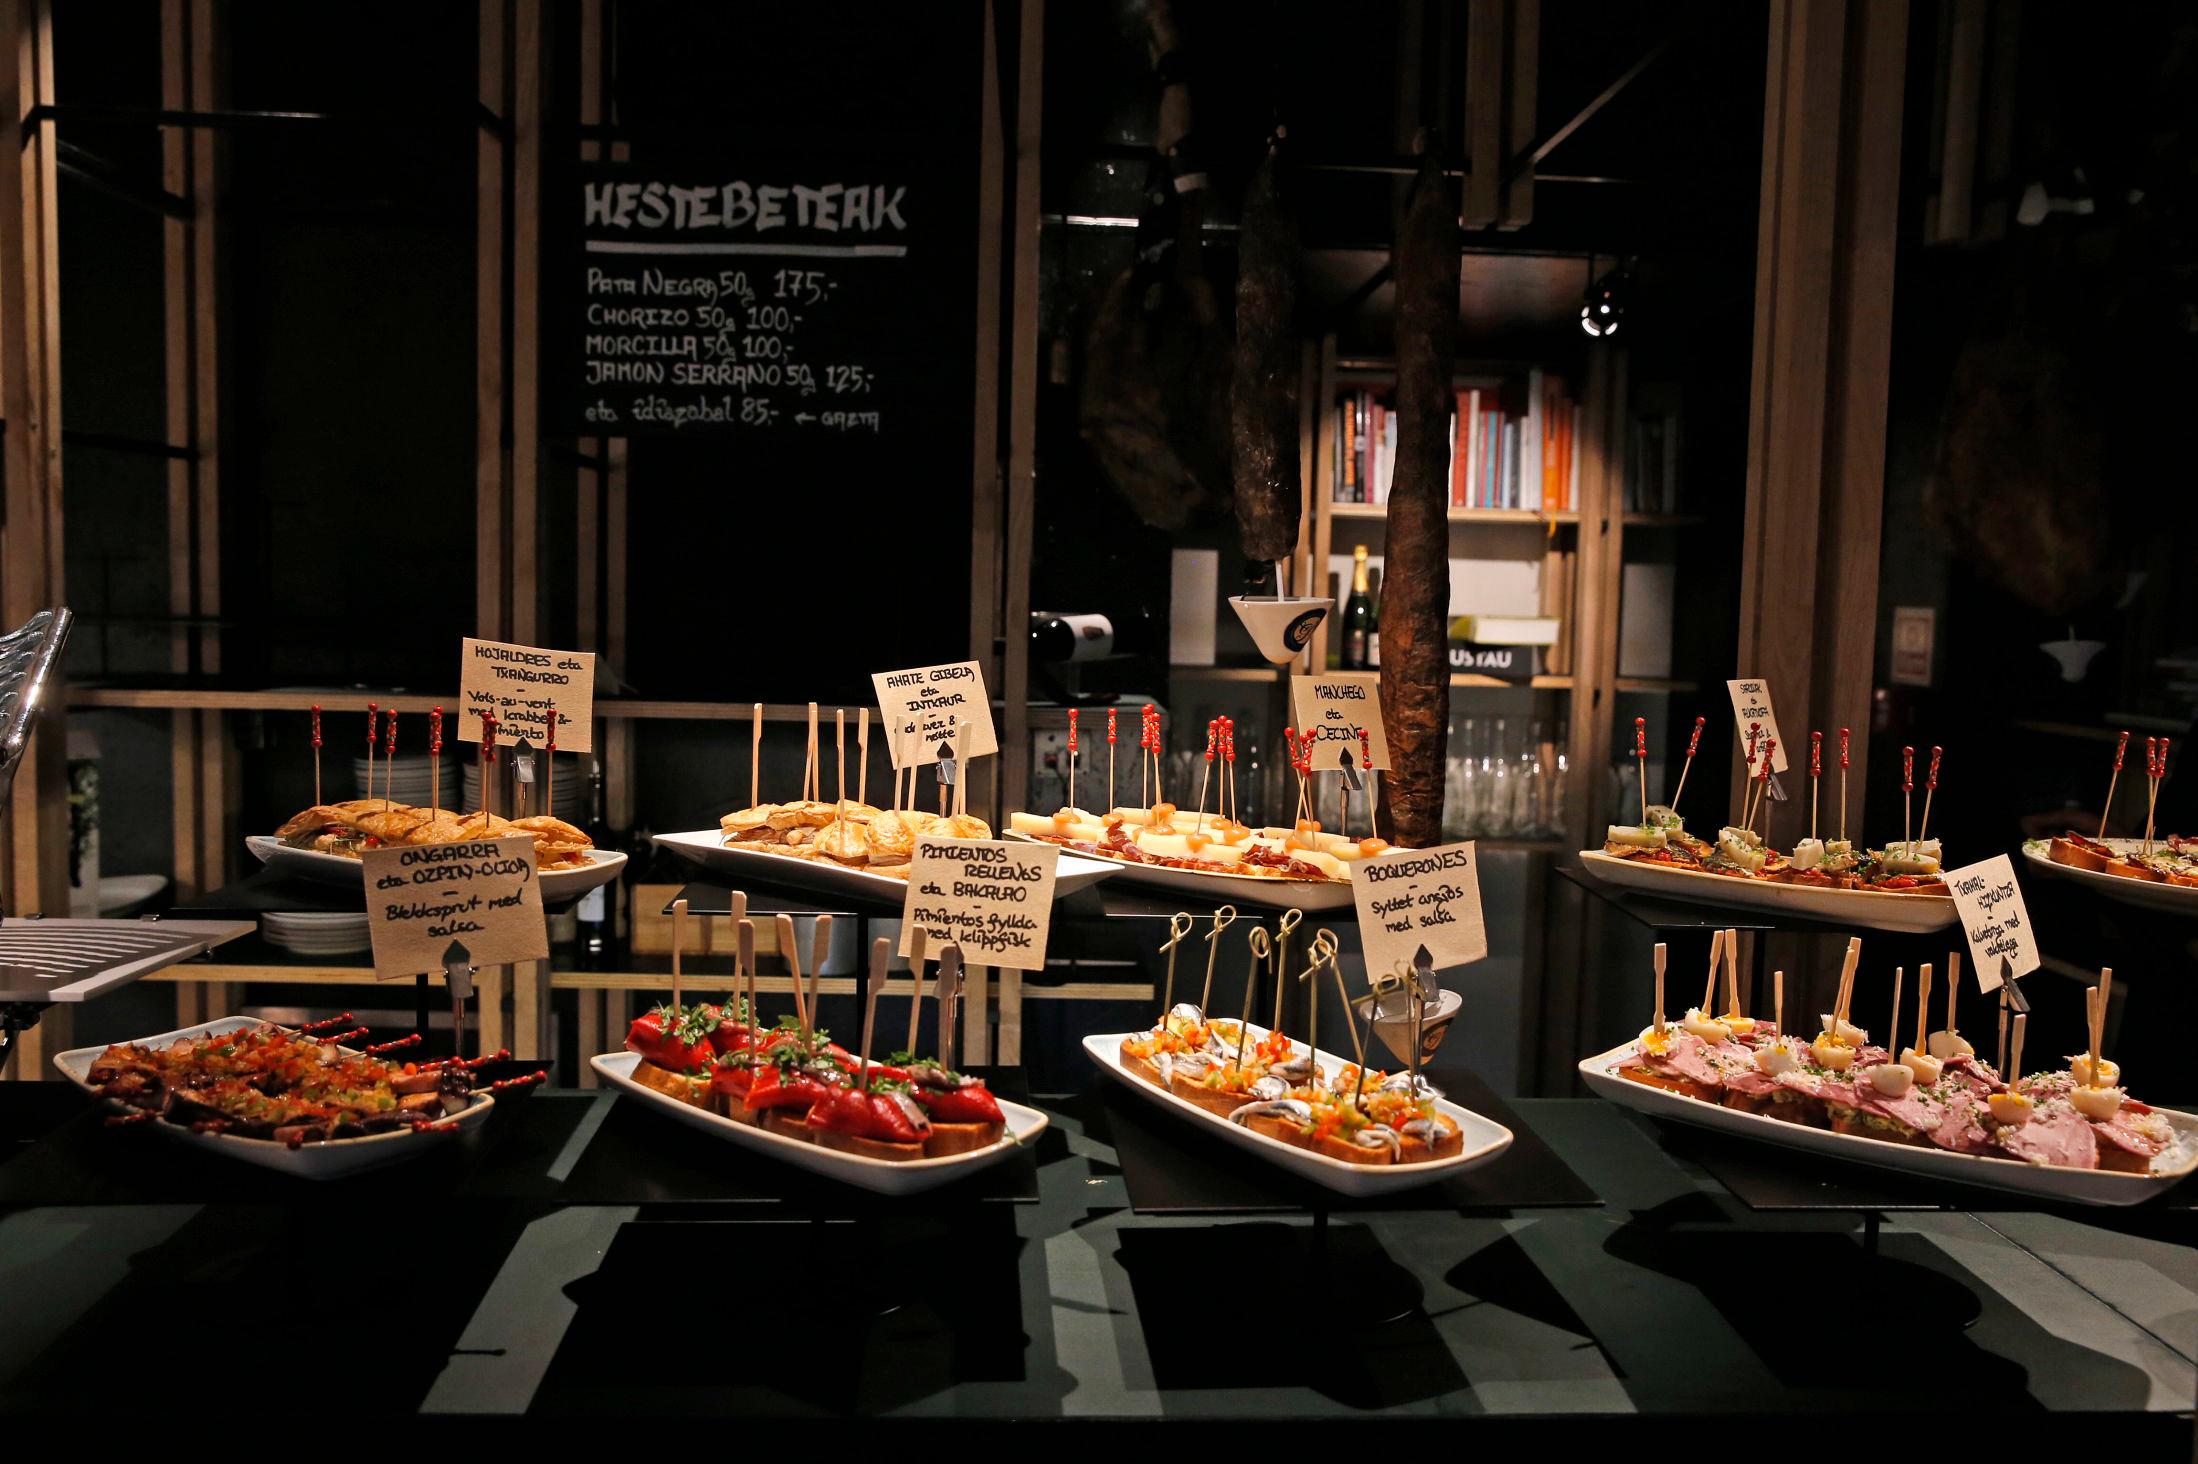 VARIERT: Kalde pintxos står fremme på en buffet. Foto: Trond Solberg/VG